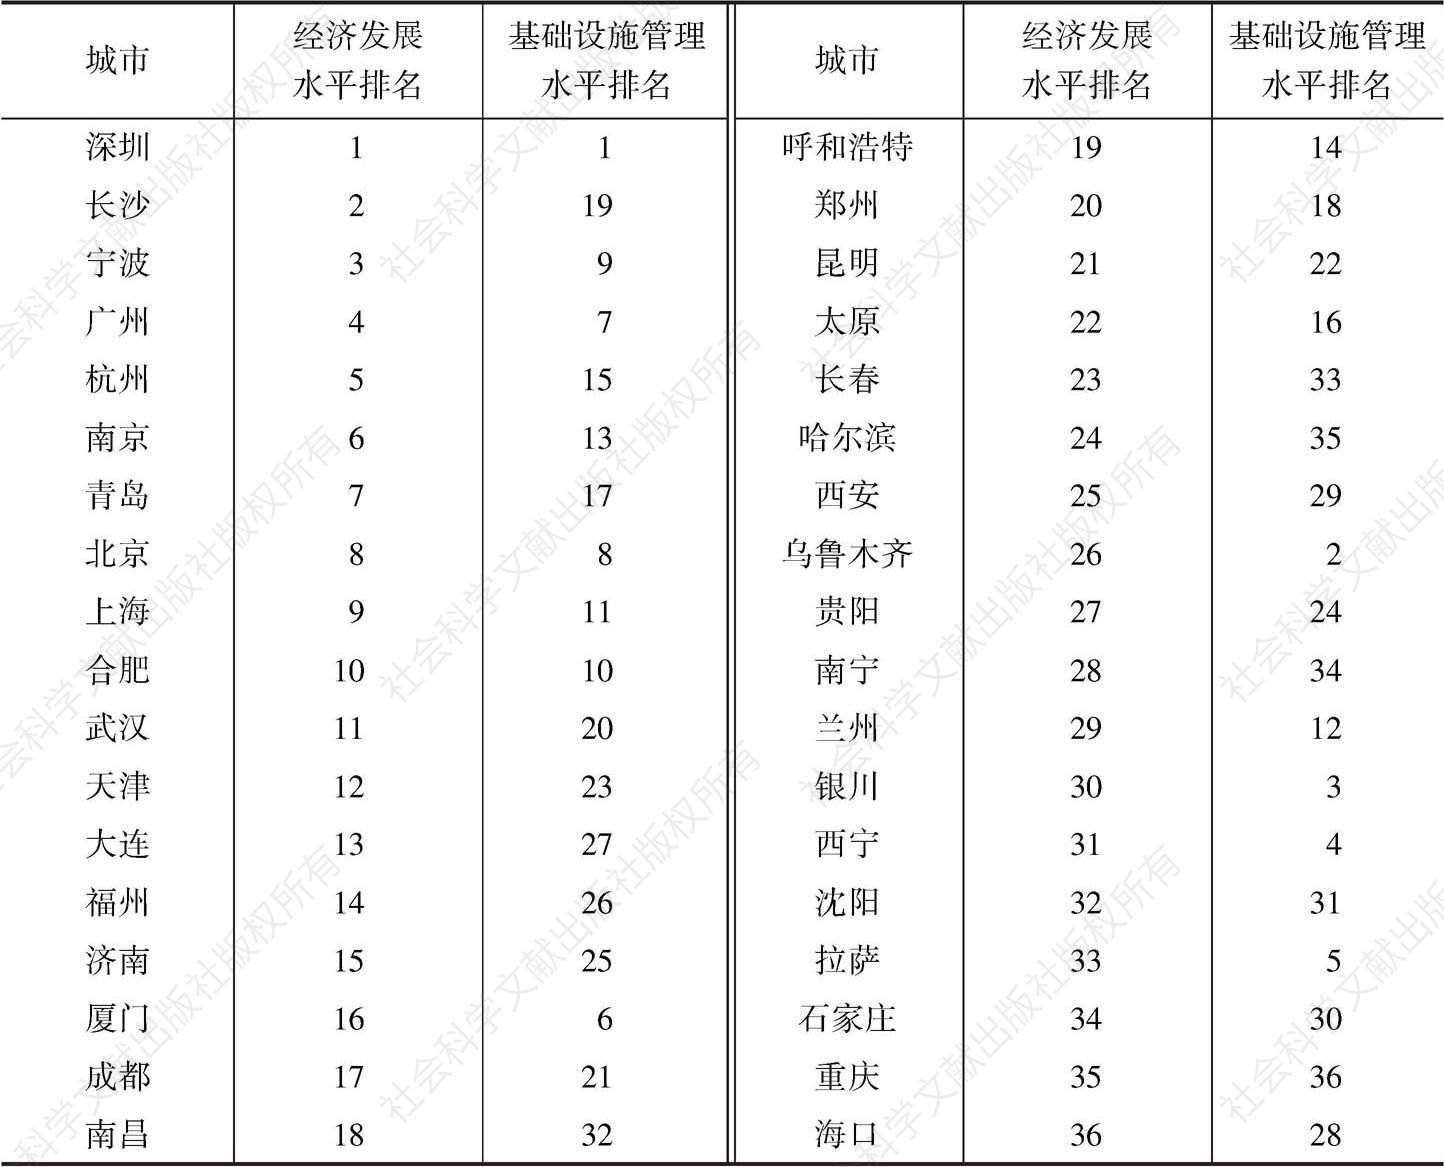 表13 中国36个重点城市基础设施管理水平和经济发展水平排名比较